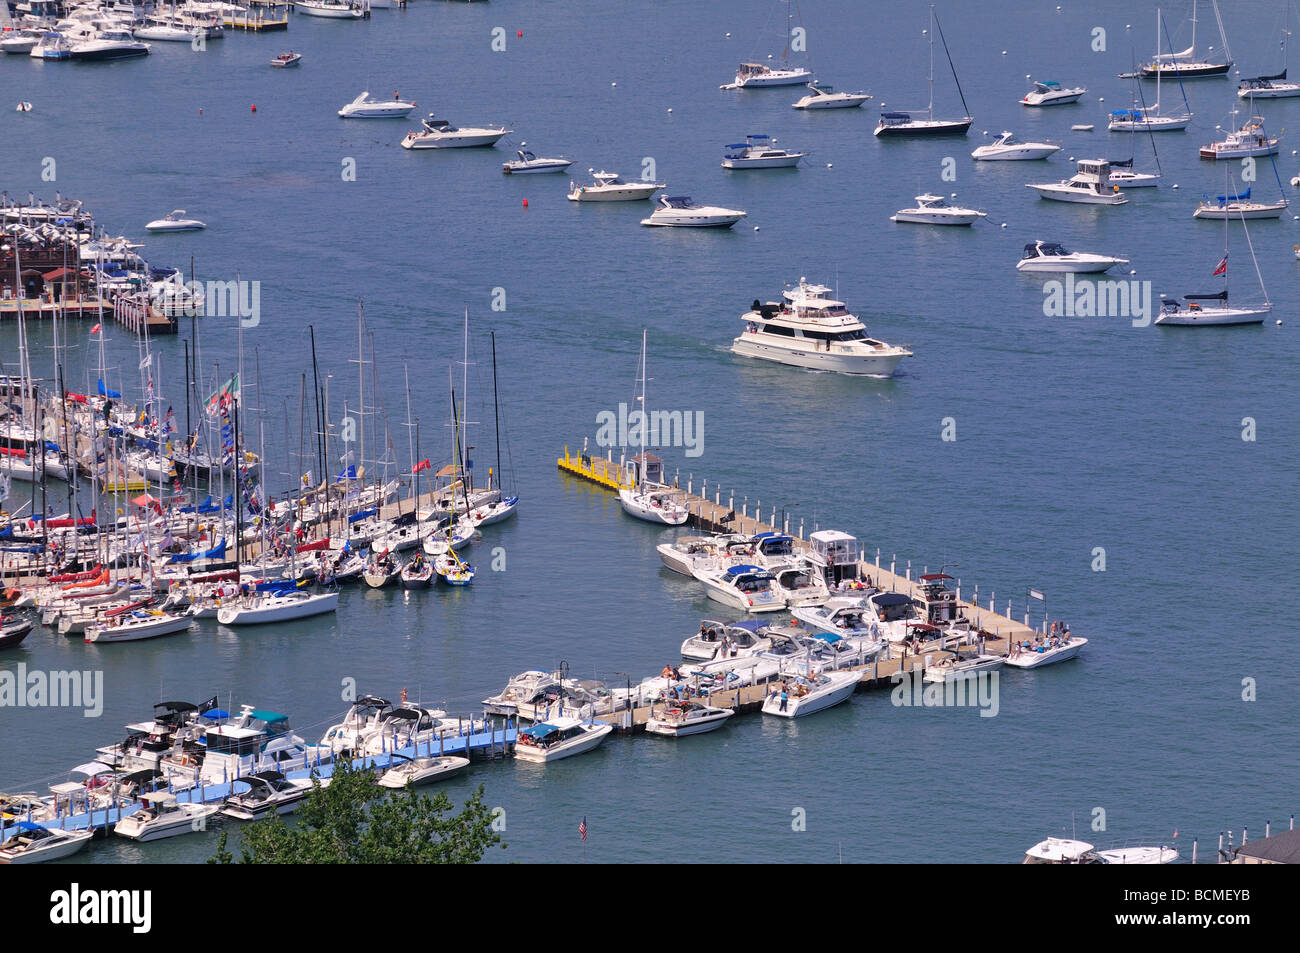 Sailboats crowd the marina at Put in Bay Stock Photo